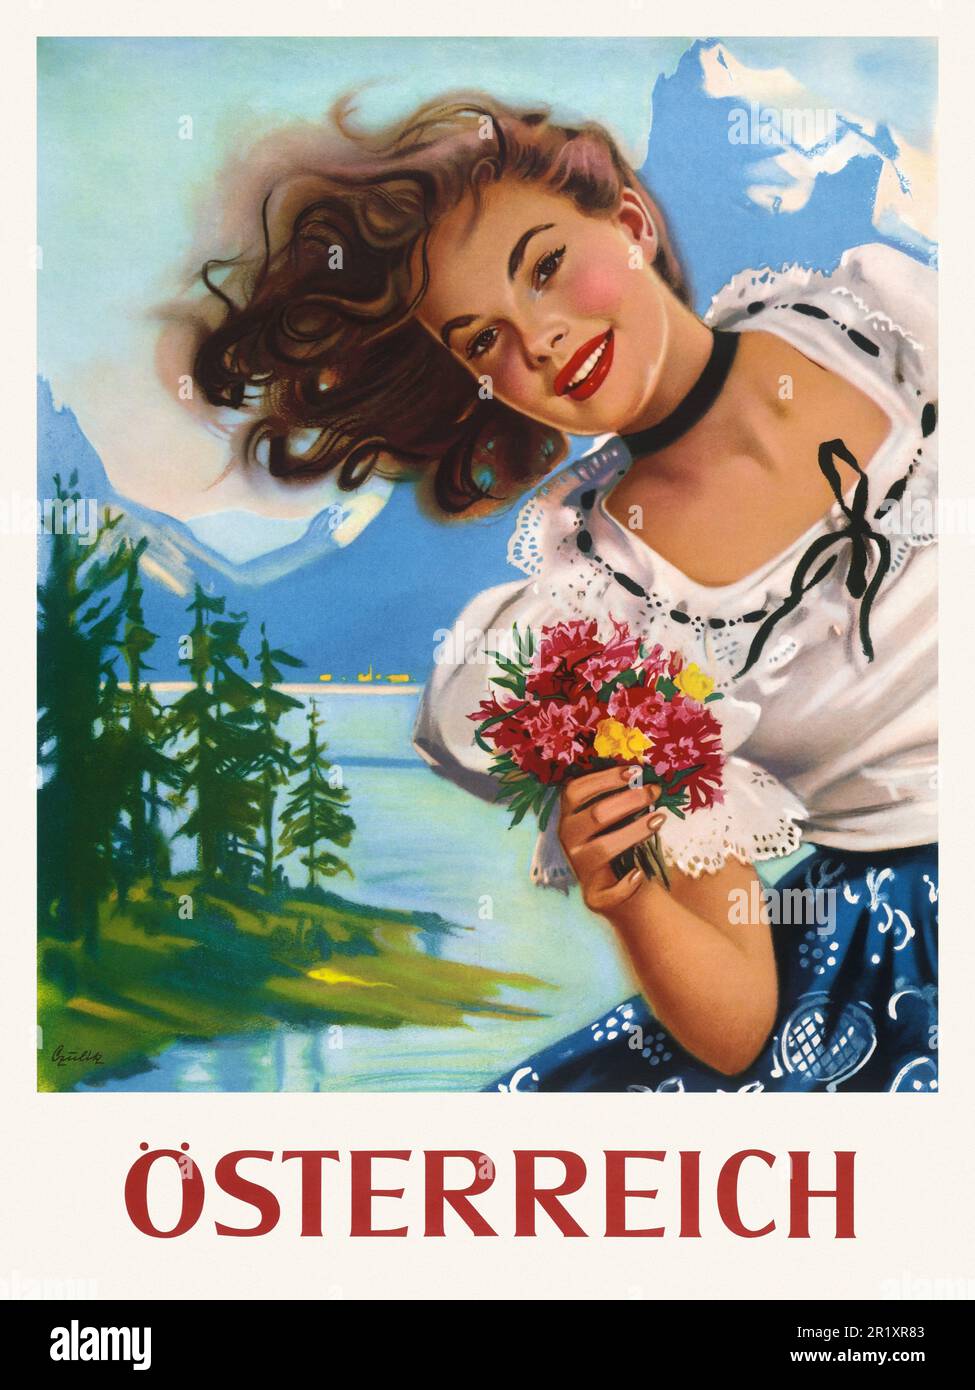 Österreich von Else Czulik (1898-1977). Poster 1952 in Österreich veröffentlicht. Stockfoto